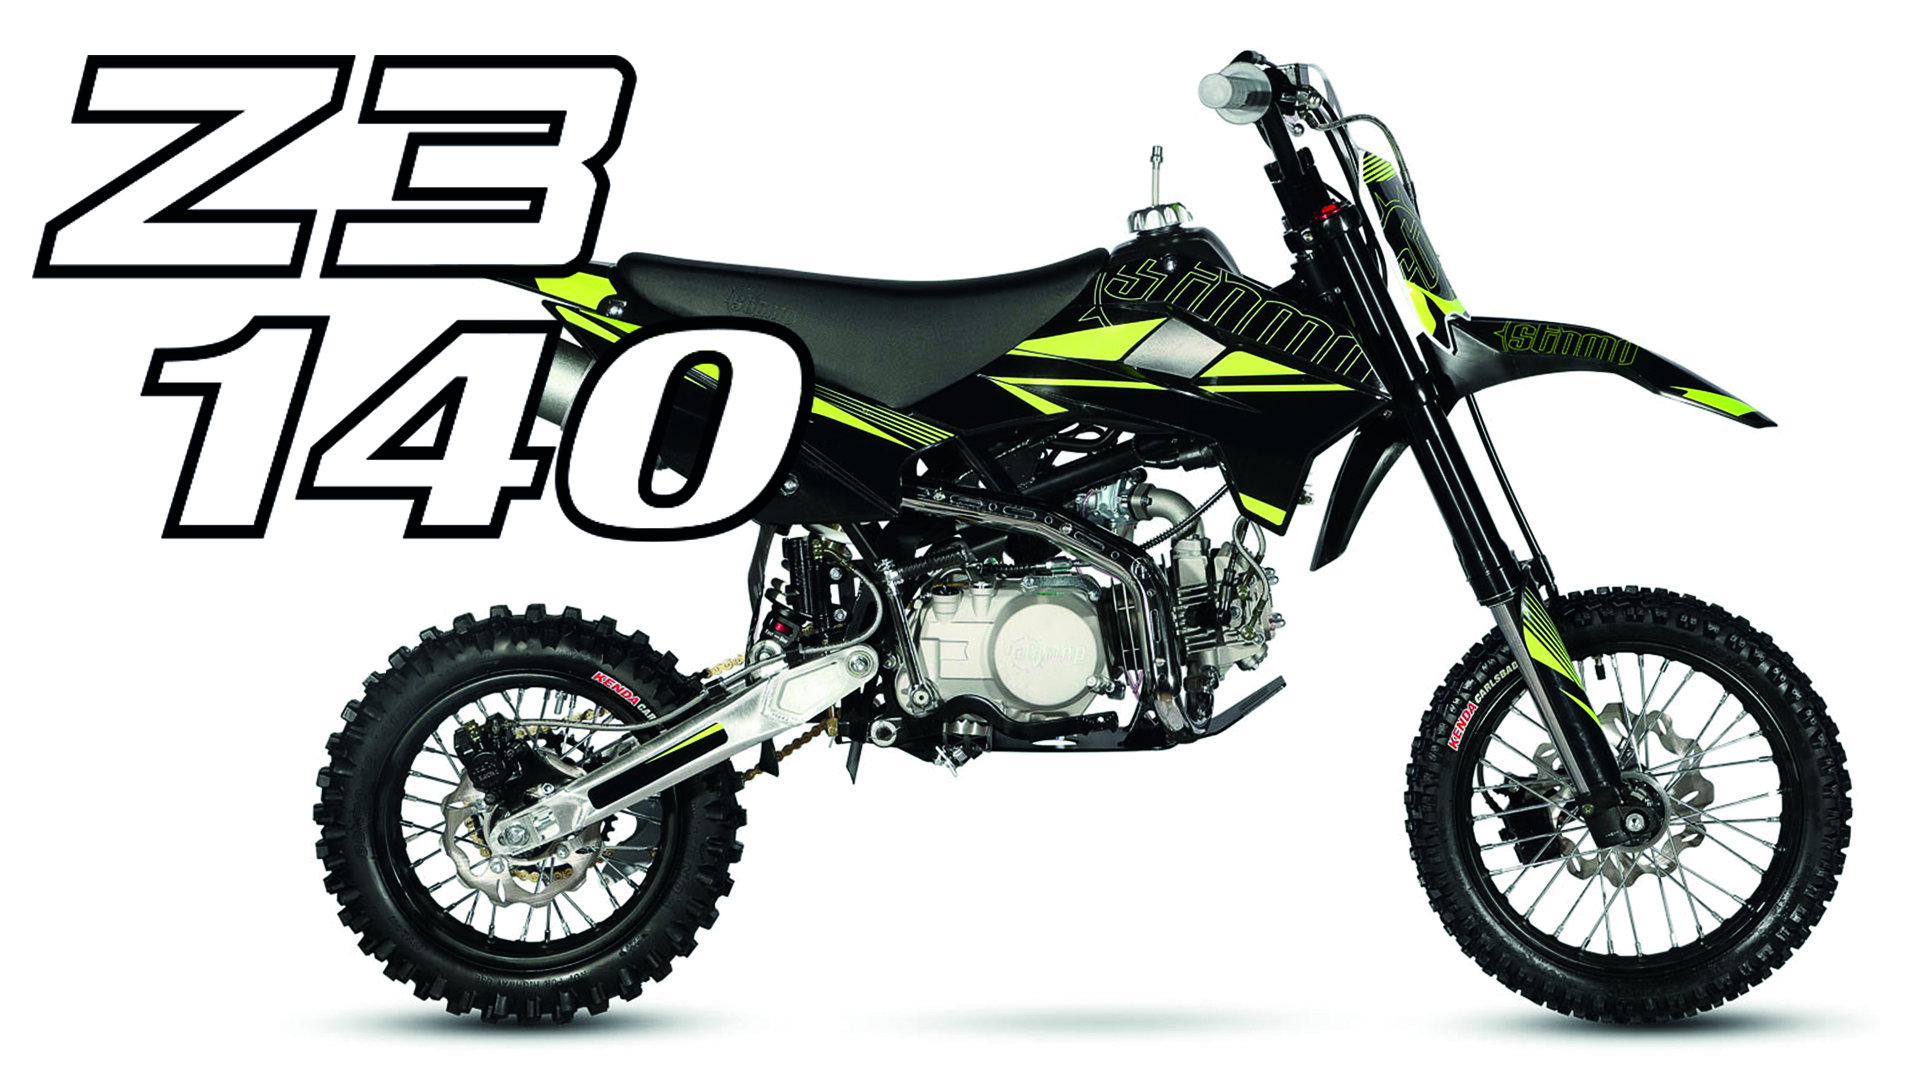 Z3 140 cc pit bike